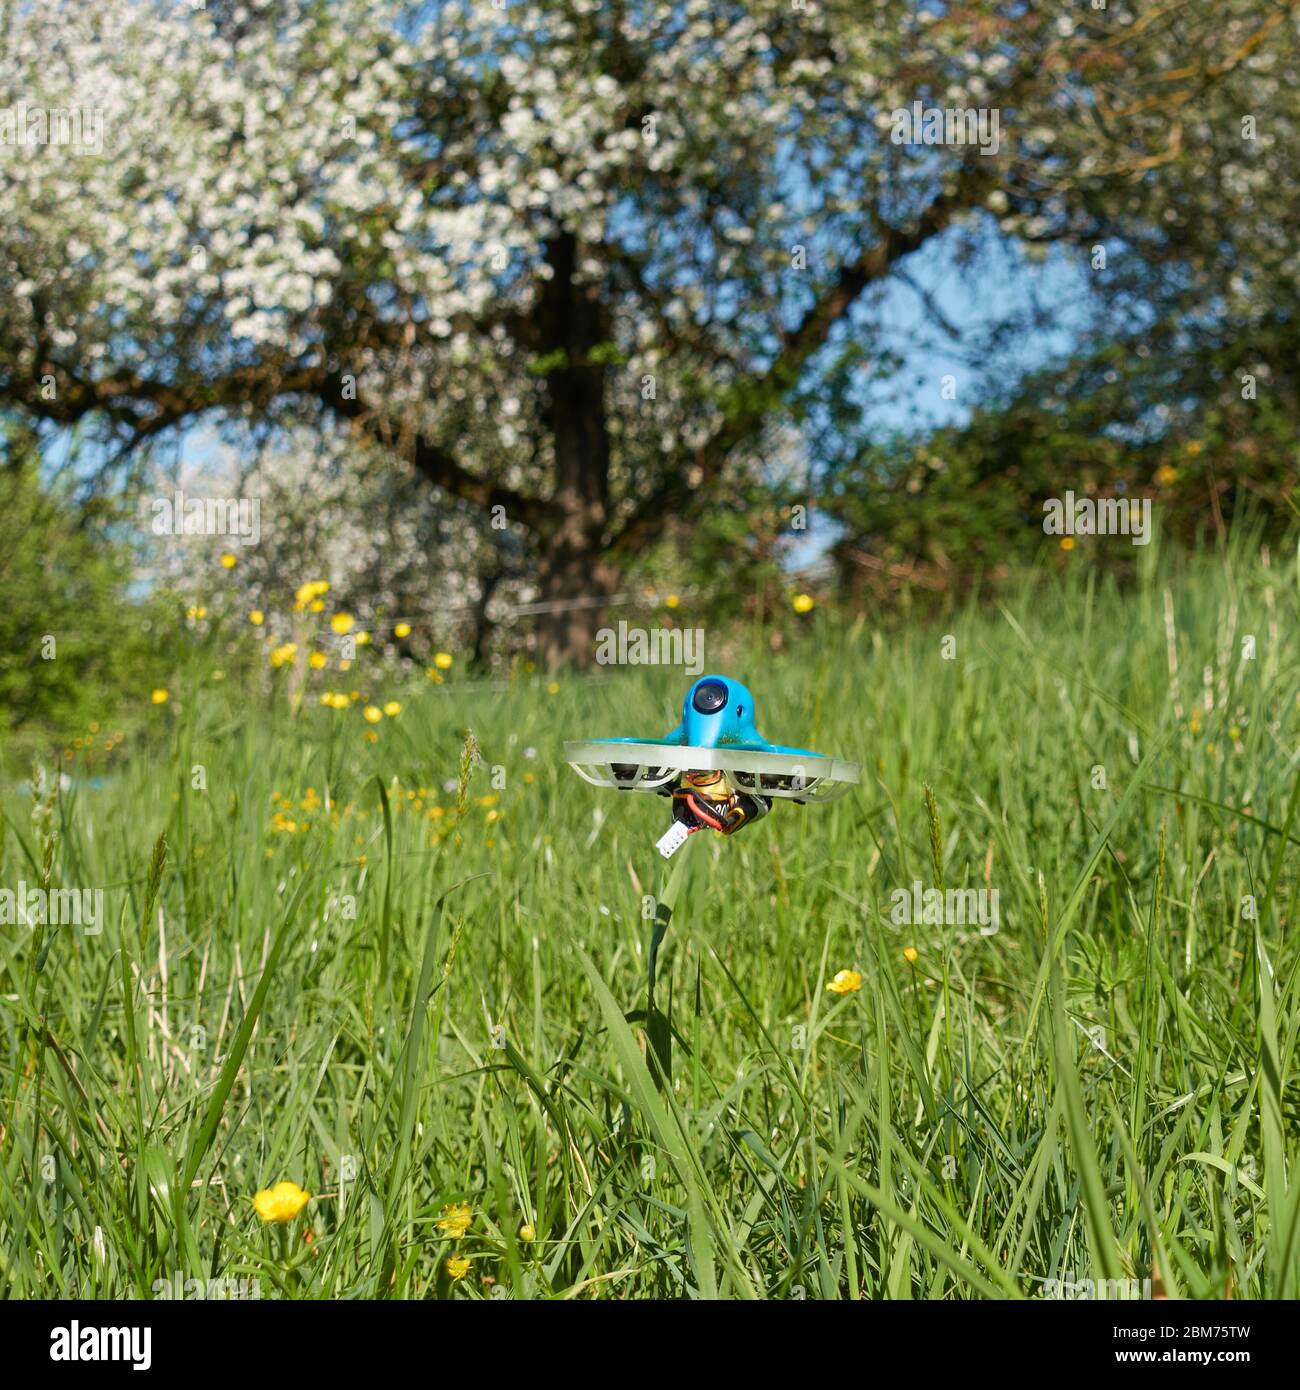 Petit drone bleu avec barre de protection blanche, qui se porte de manière fiable sur des prés verts, des butterbutterbups et des pommiers peuvent être vus.Nuertingen, Allemagne Banque D'Images